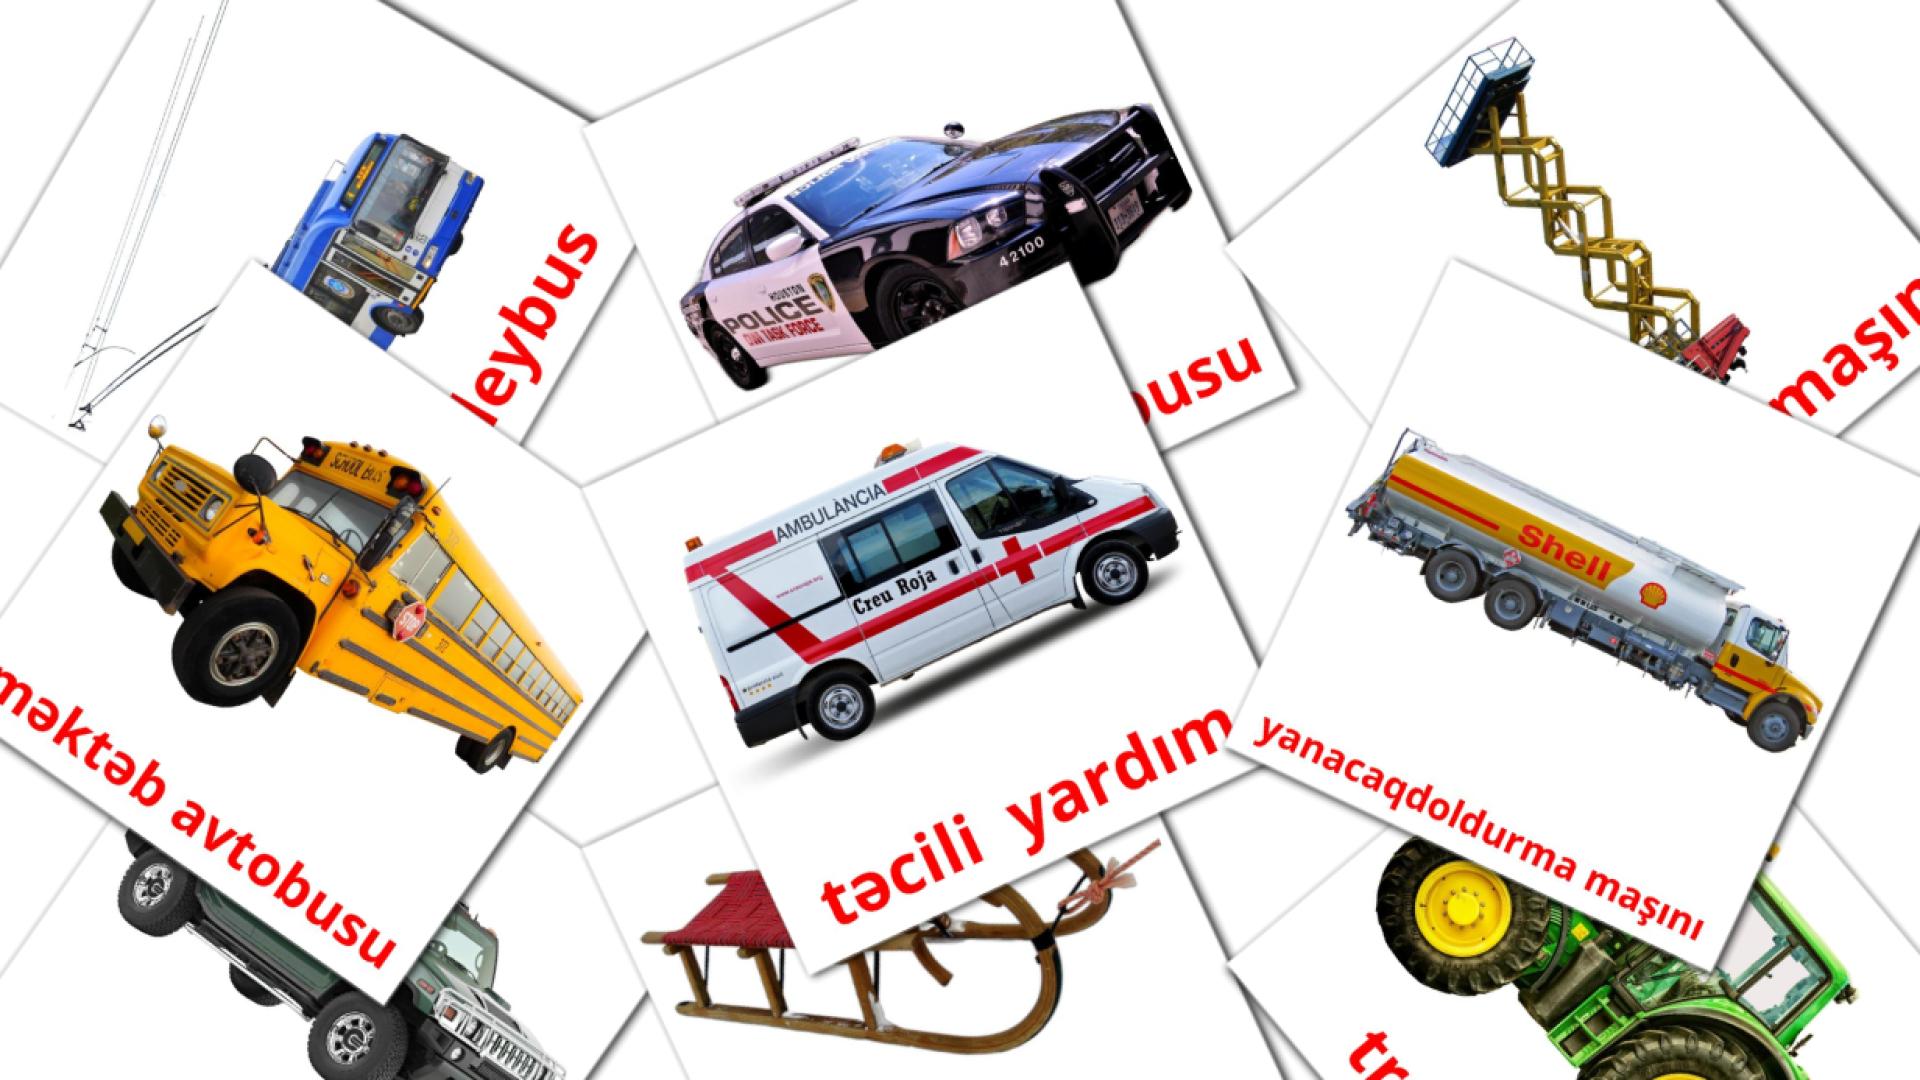 Landvoertuigen - azerbeidzjaanse woordenschatkaarten